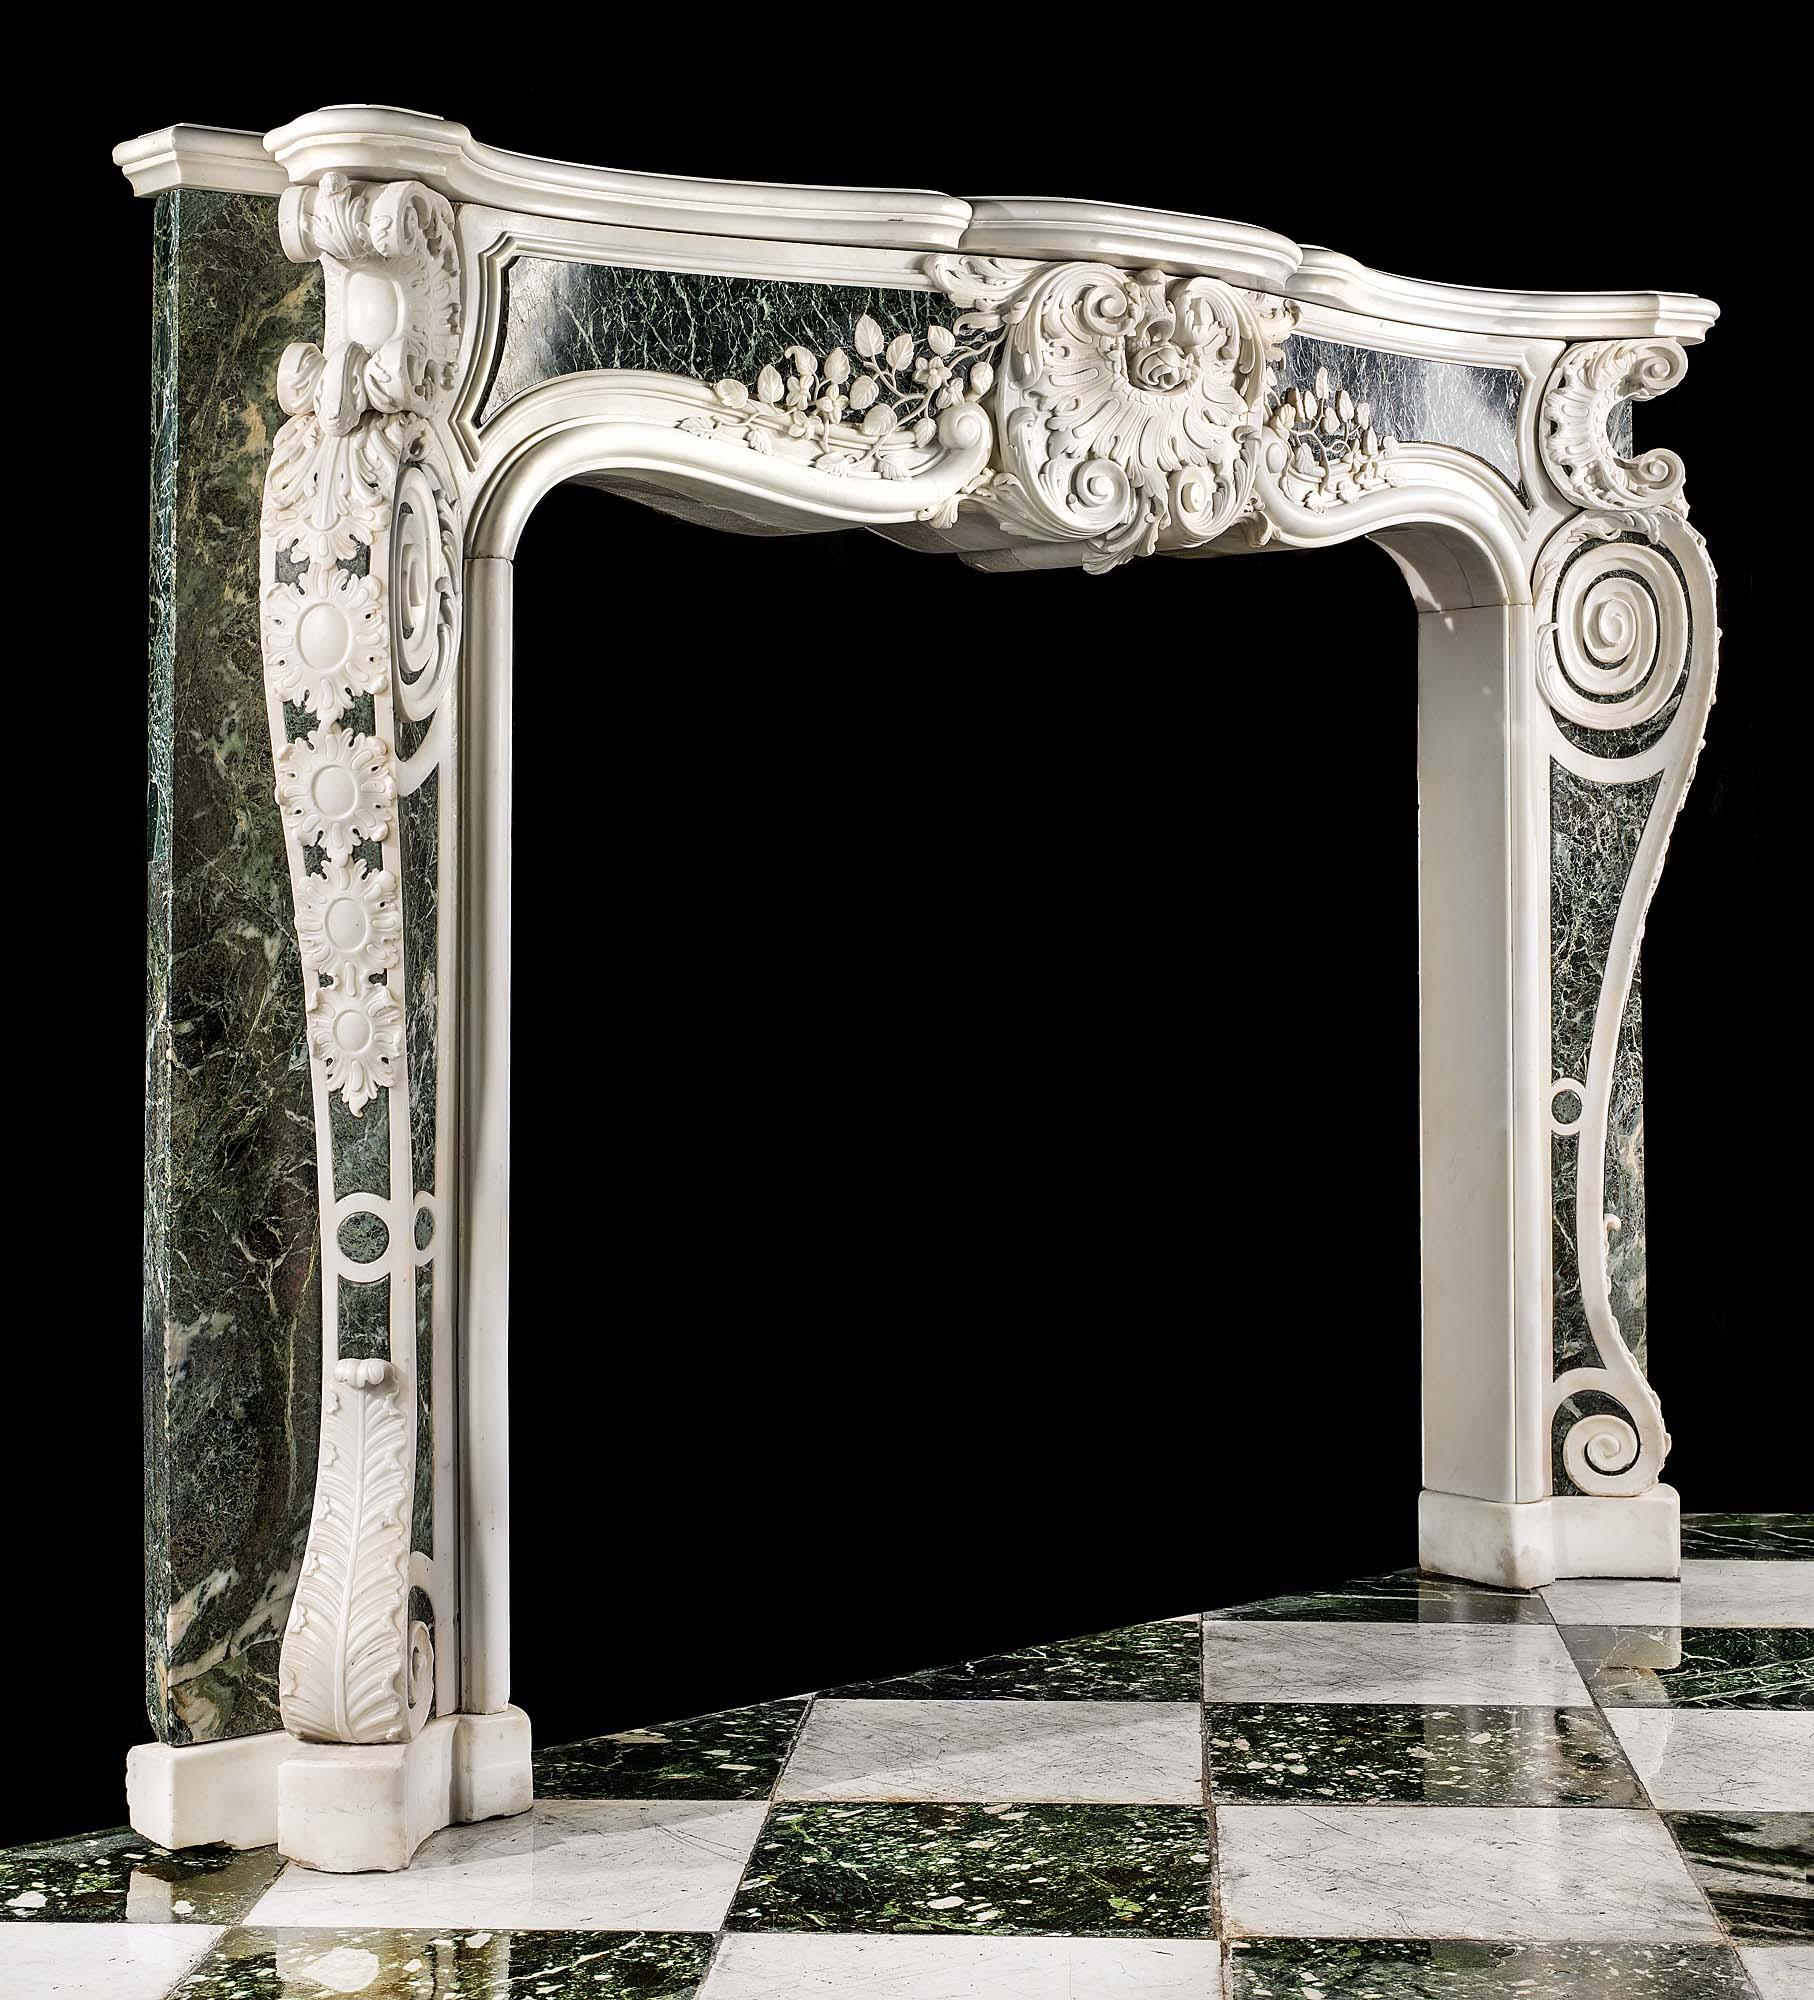 Ein großer, seltener und imposanter englischer Rokokokamin aus dem späten George II. mit starken palladianischen Einflüssen, geschnitzt aus weißem, statuarischem Marmor und eingelegt in Platten aus Verde Antico-Marmor. In der Mitte des getäfelten